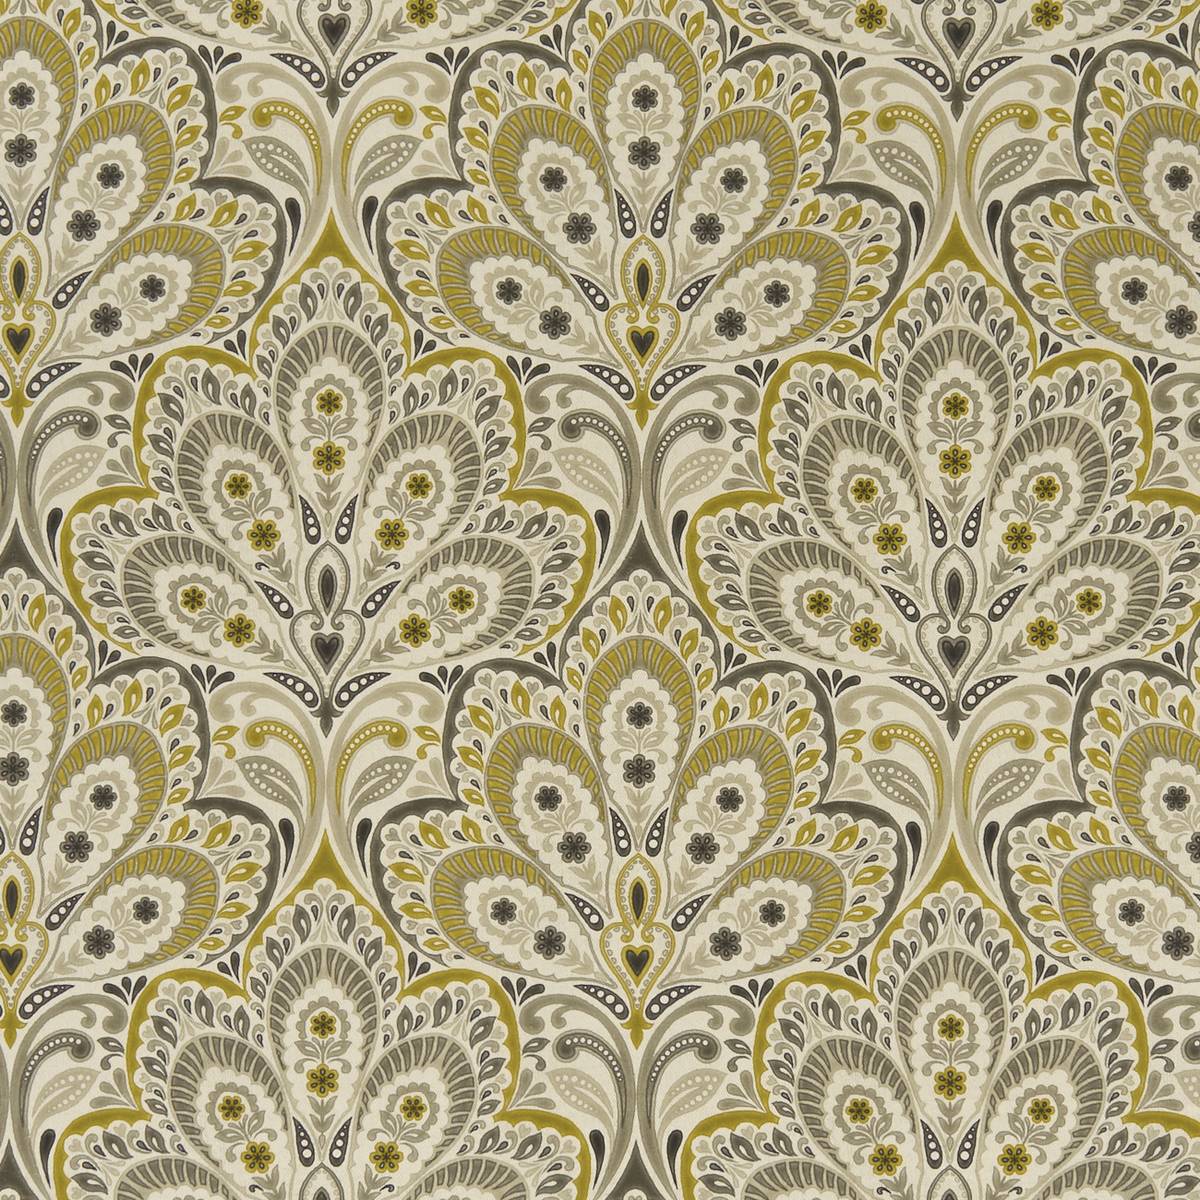 Persia Charcoal/Ochre Fabric by Clarke & Clarke